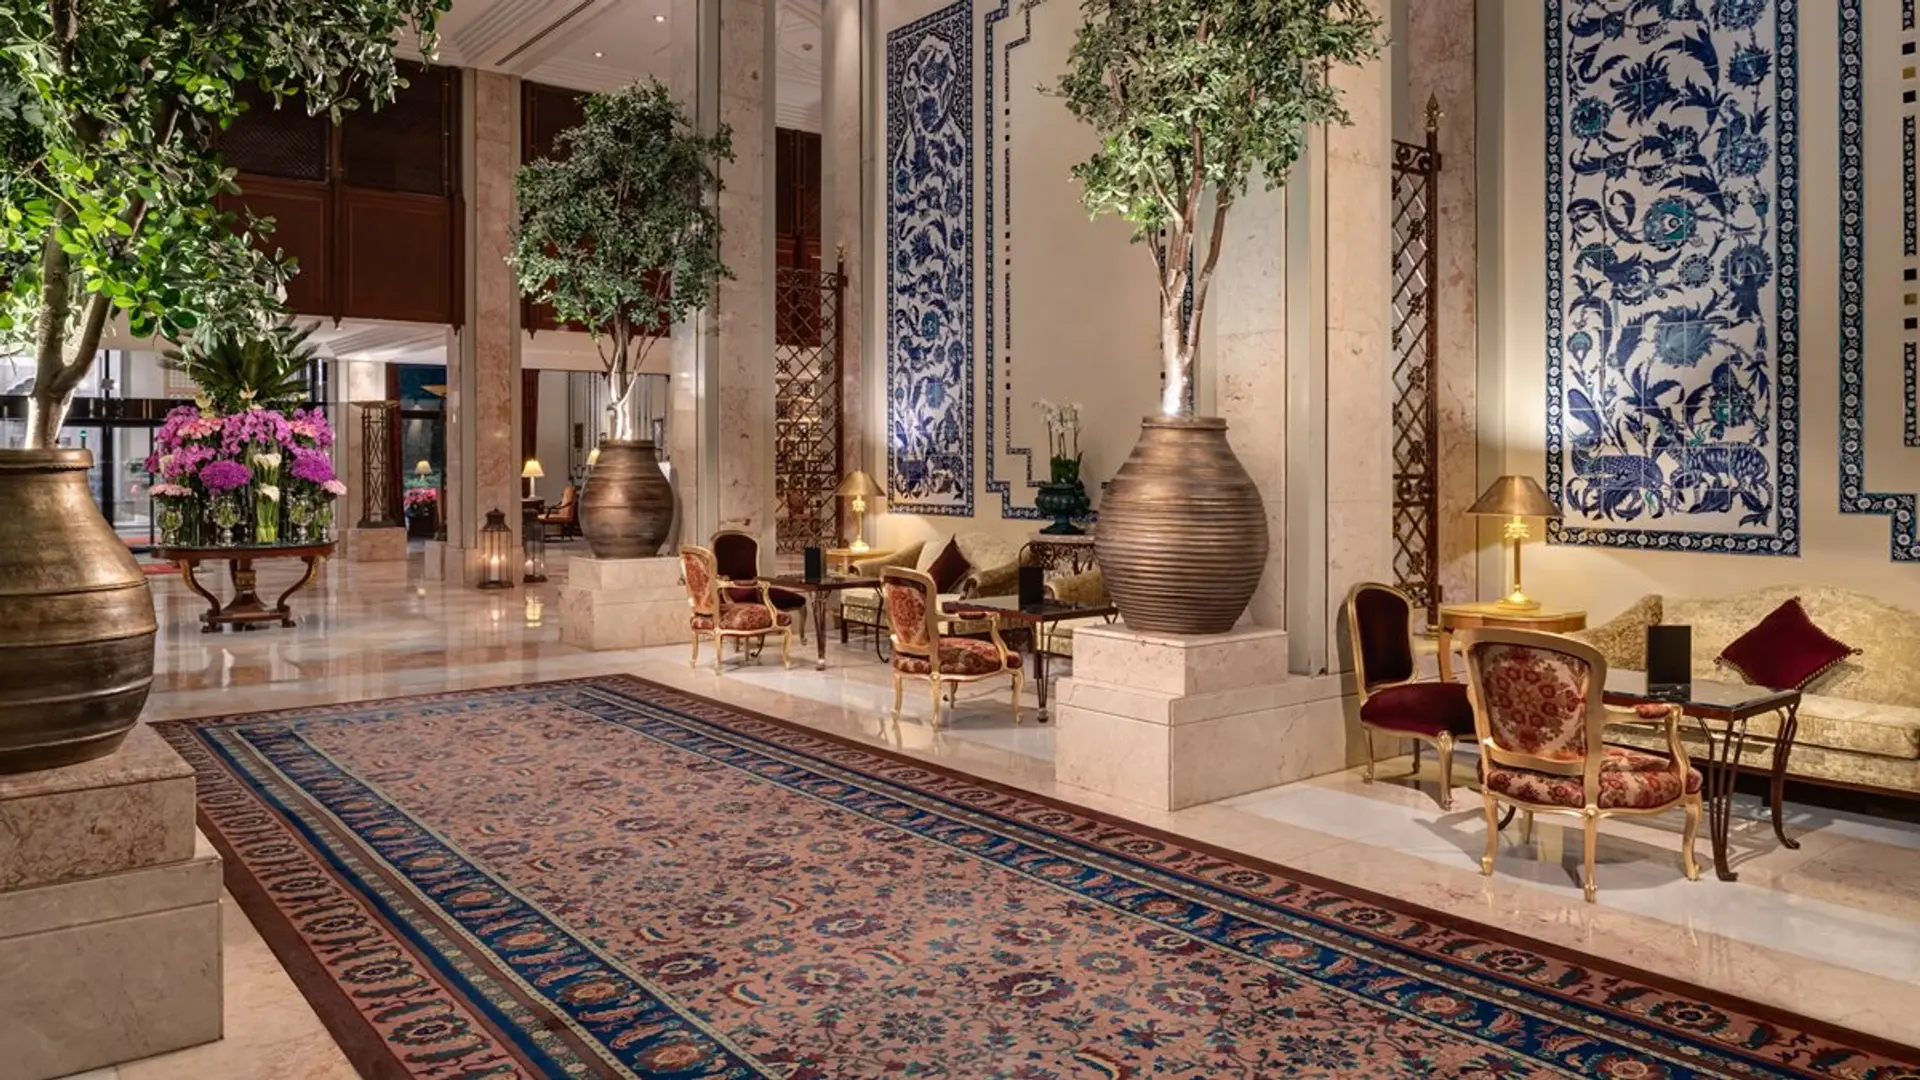 Hotel review Style' - Çırağan Palace Kempinski Istanbul - 1